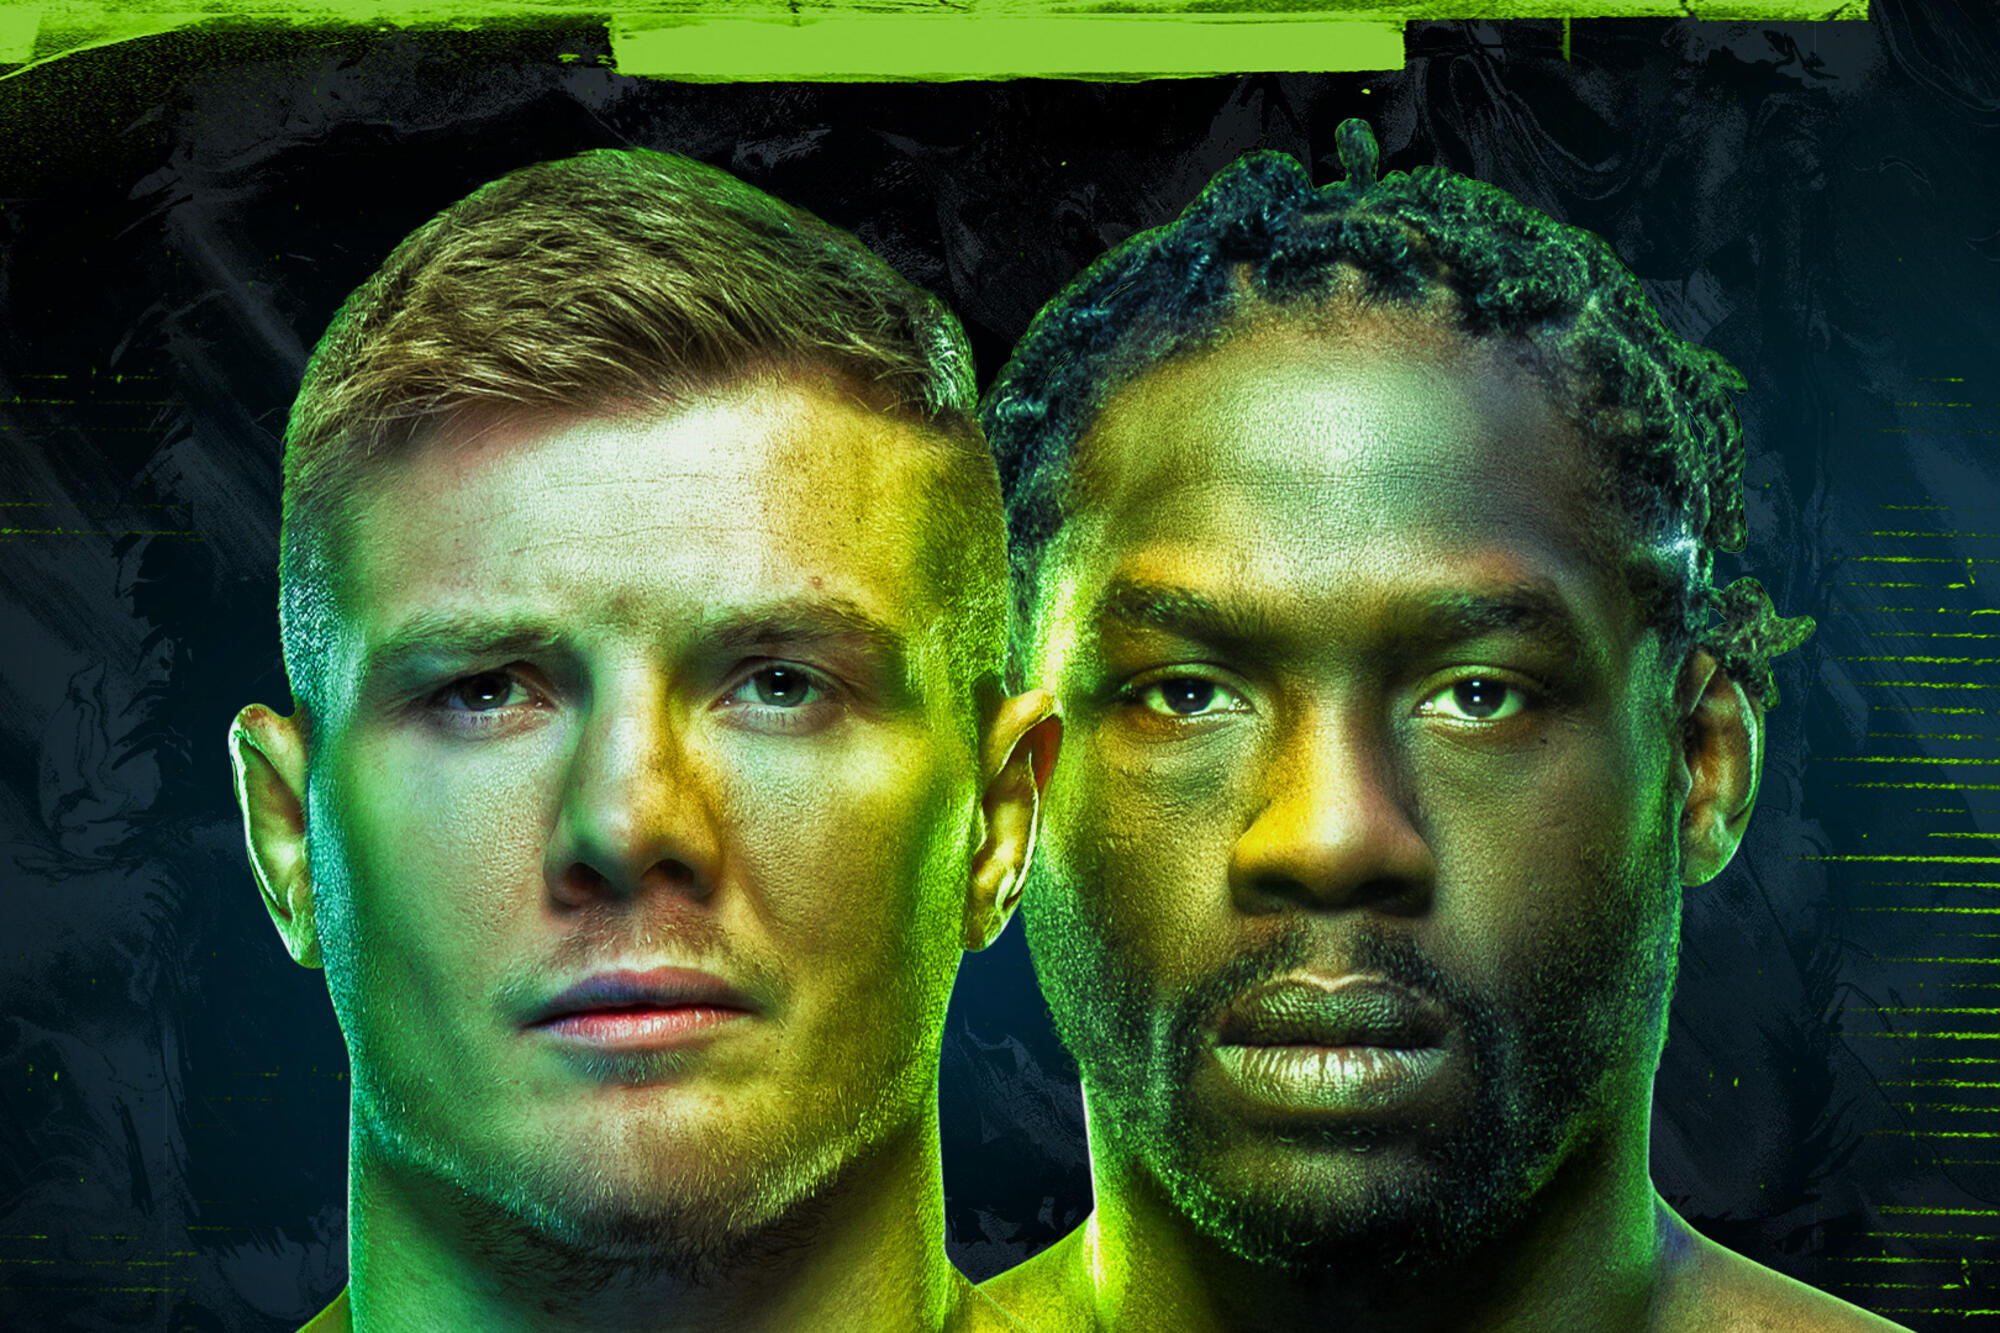 UFC Vegas 75 - Las Vegas - Poster et affiche